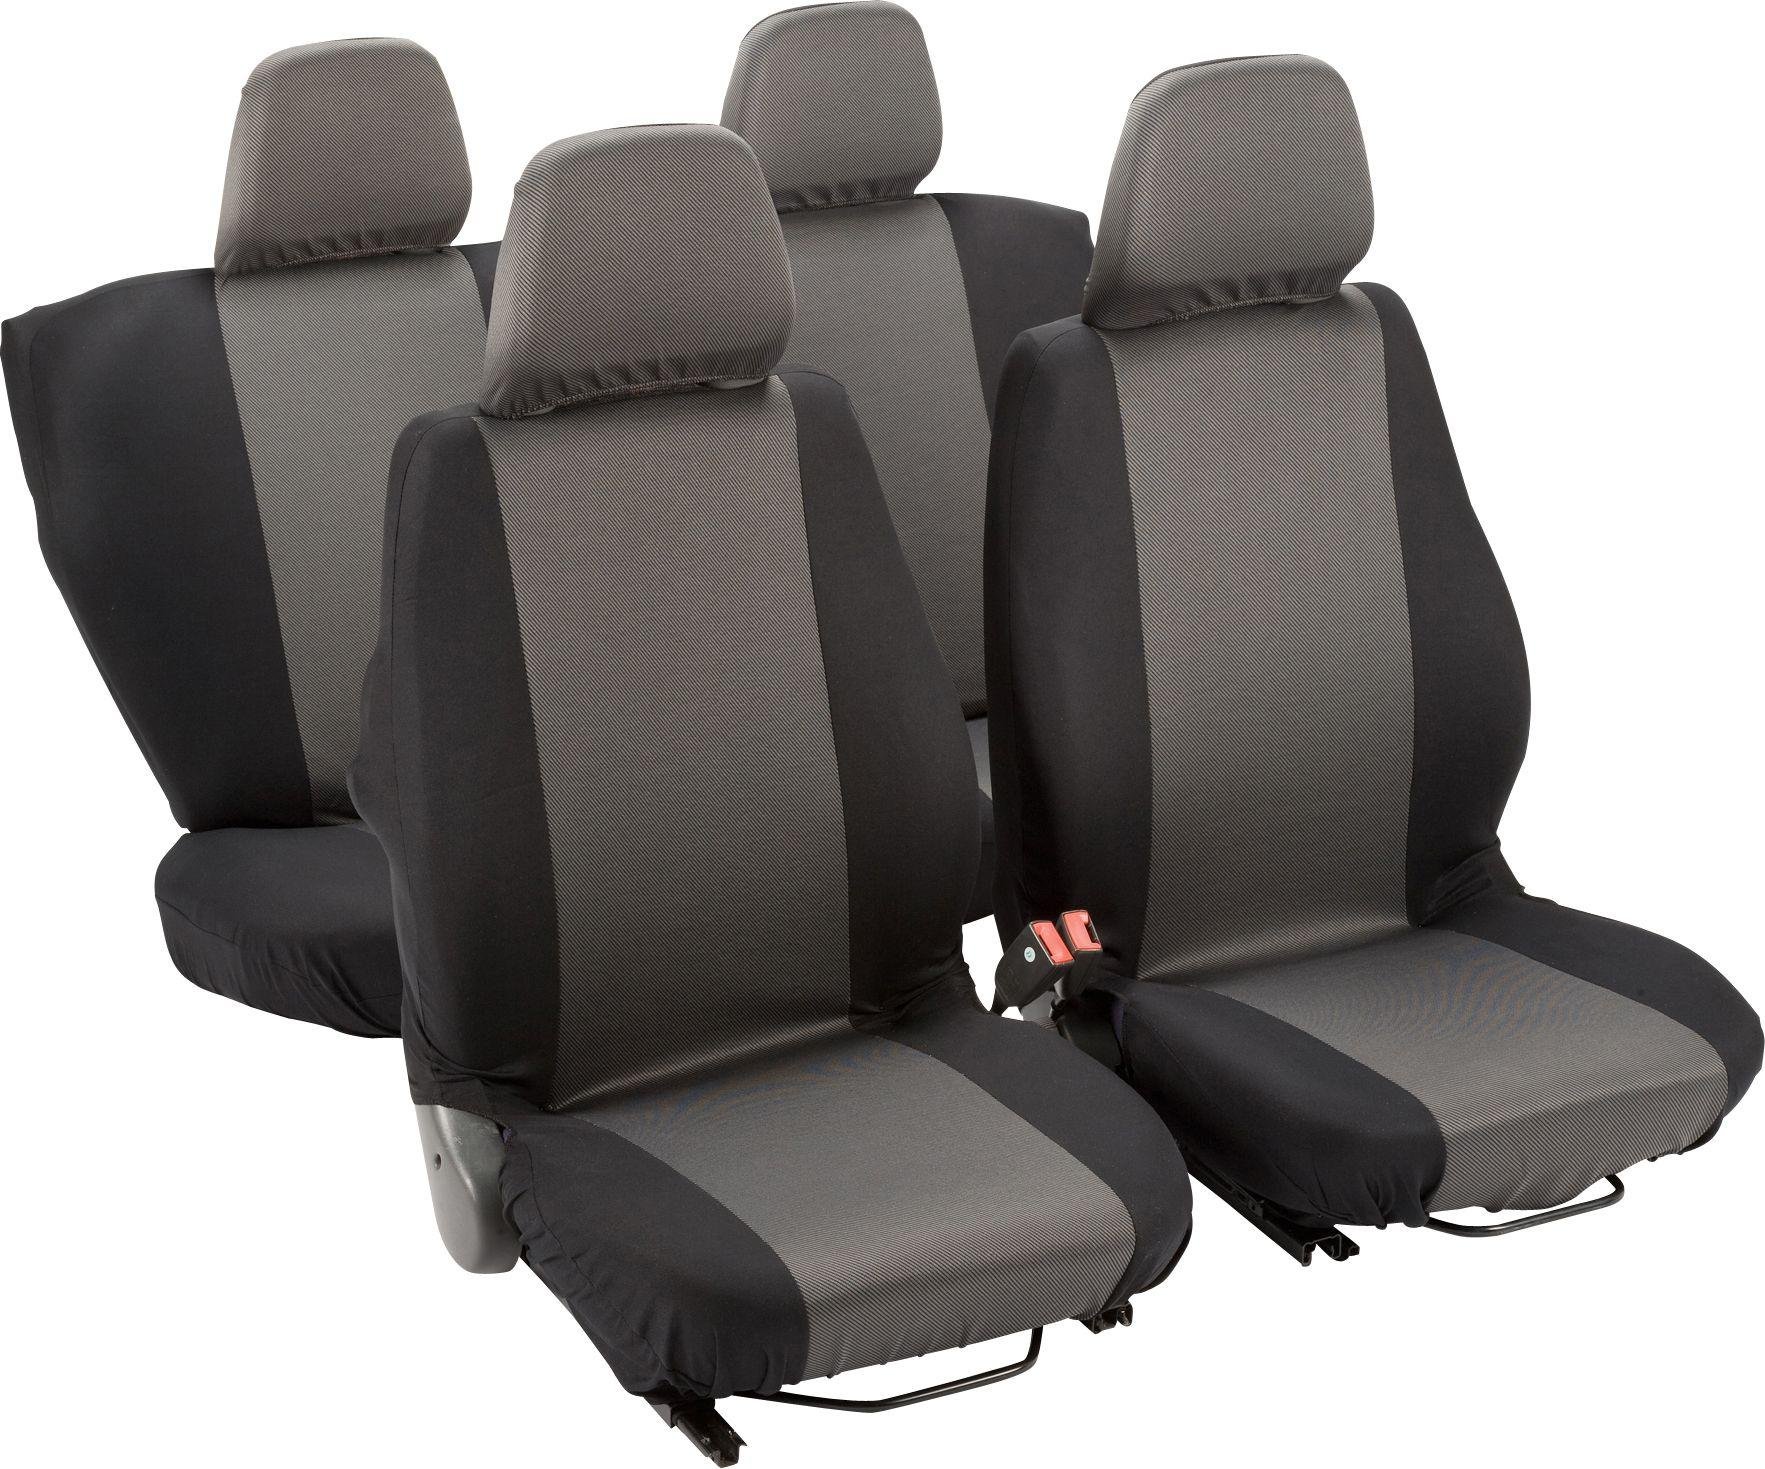 Simple Value Full Set of Seat Covers - Black (7406157) | Argos Price